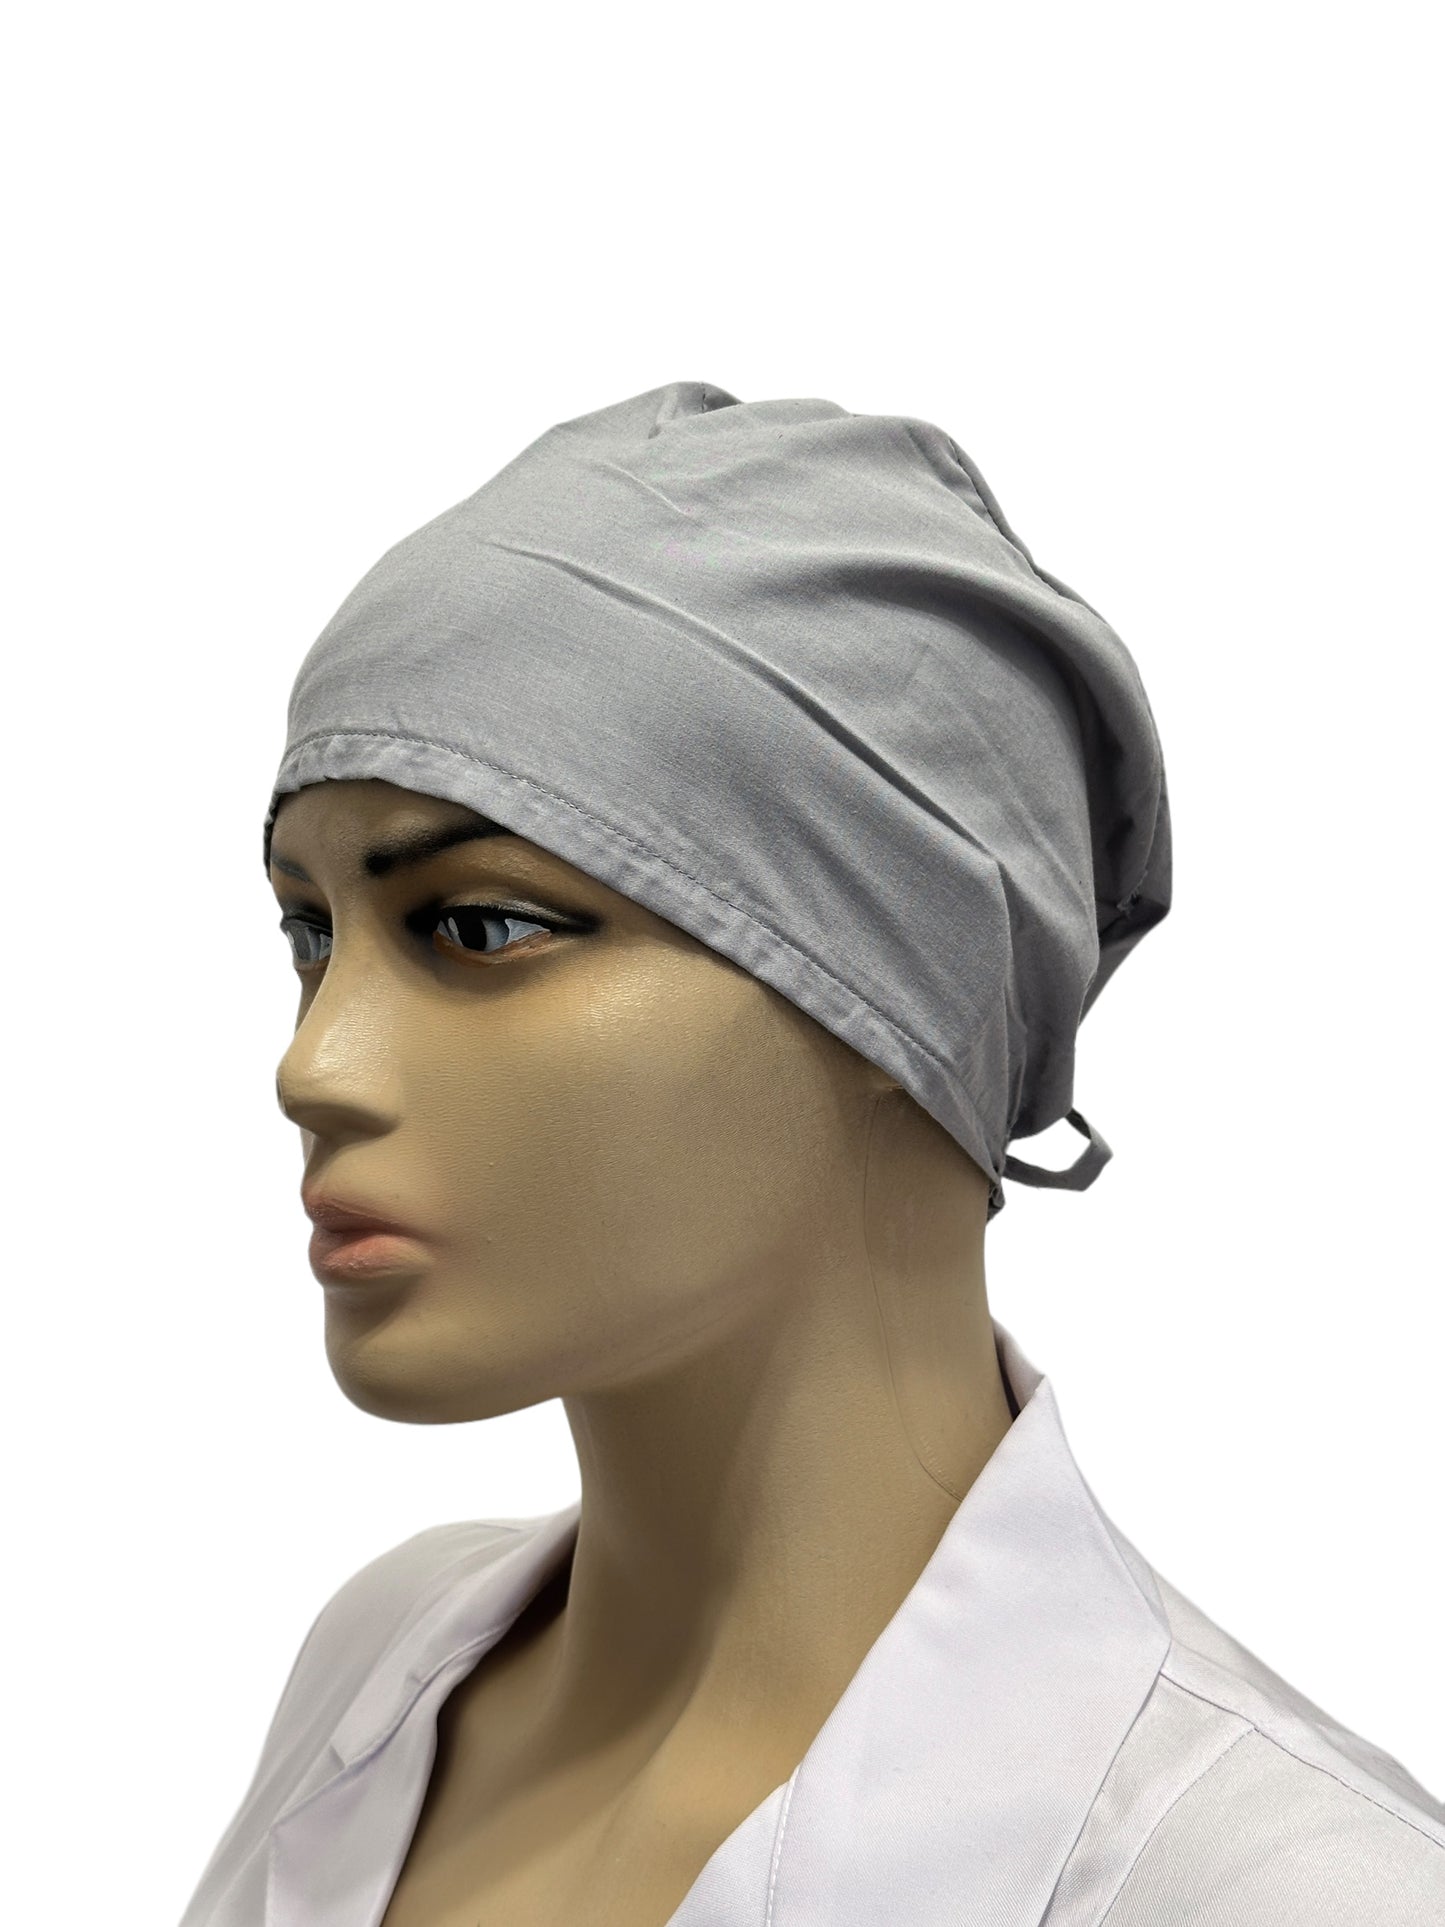 Unisex gray medical cap